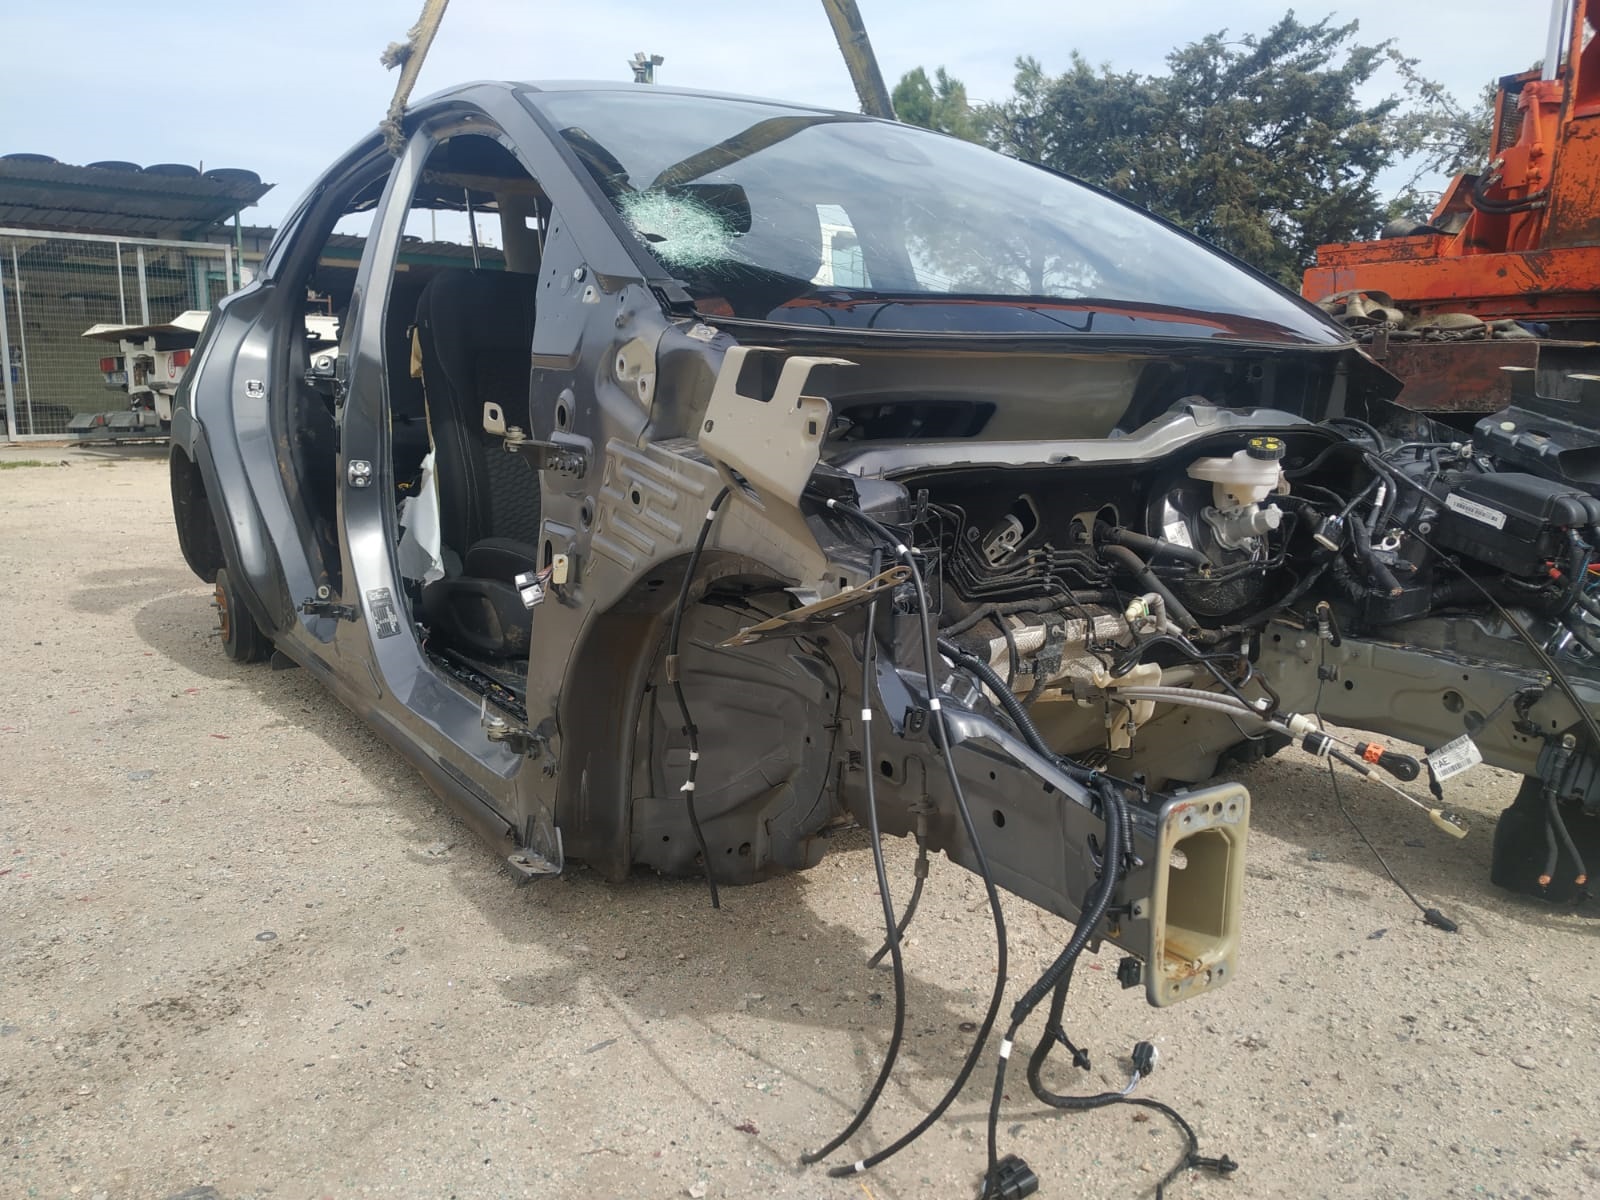 Al momento stai visualizzando Scocca ford puma del 2022 disponibile nel nostro autoparco di demolizione per la vendita dei ricambi usati. Info solo telefonando allo 3485846422.